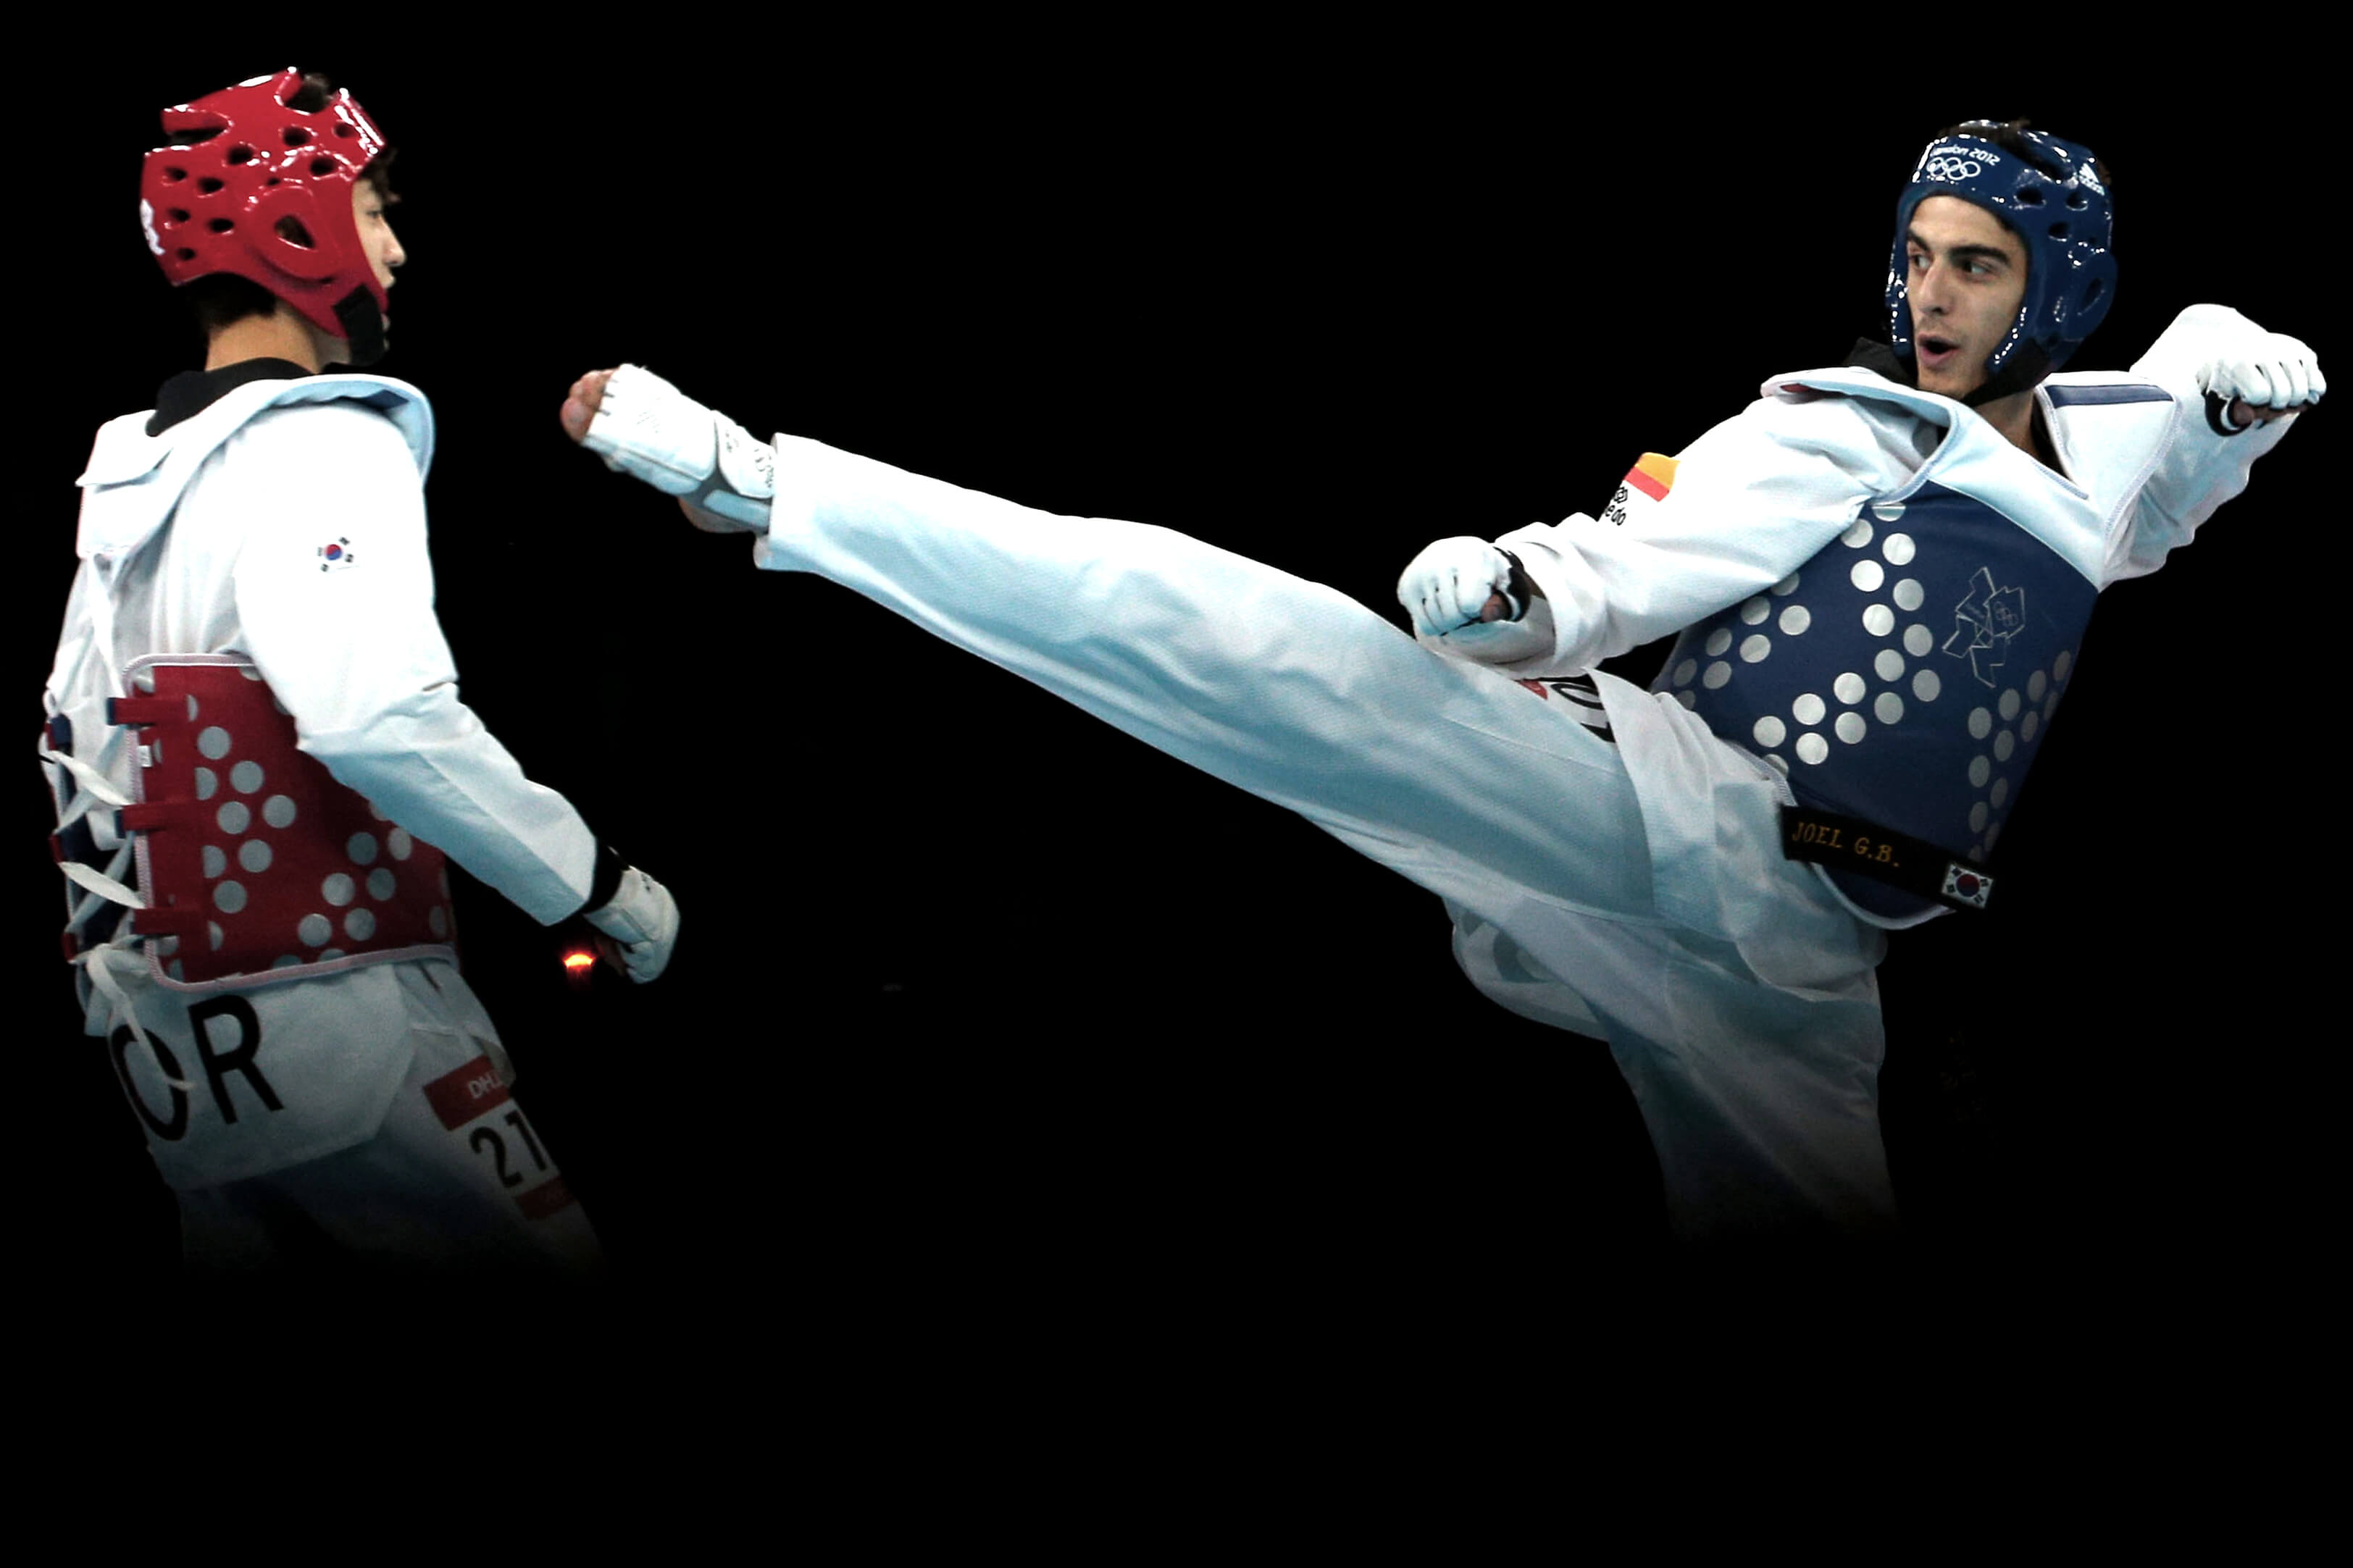 El Club Industrial sumó taekwondo a su variada oferta de actividades